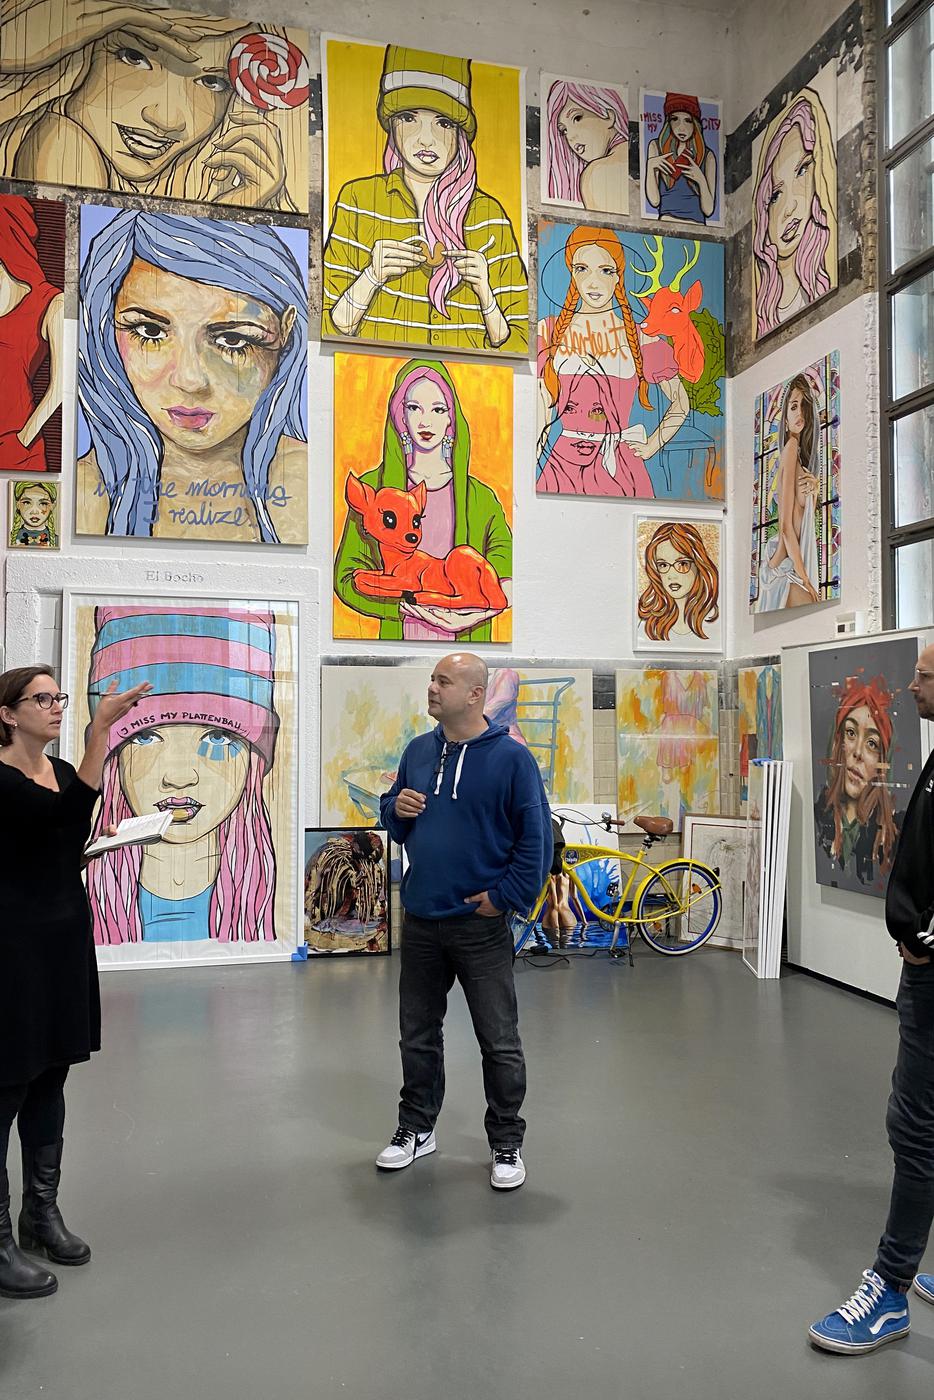 zu Besuch in der Kunstgalerie art 42 mit Atilla Kirbas und Messemacher Raiko Schwalbe
